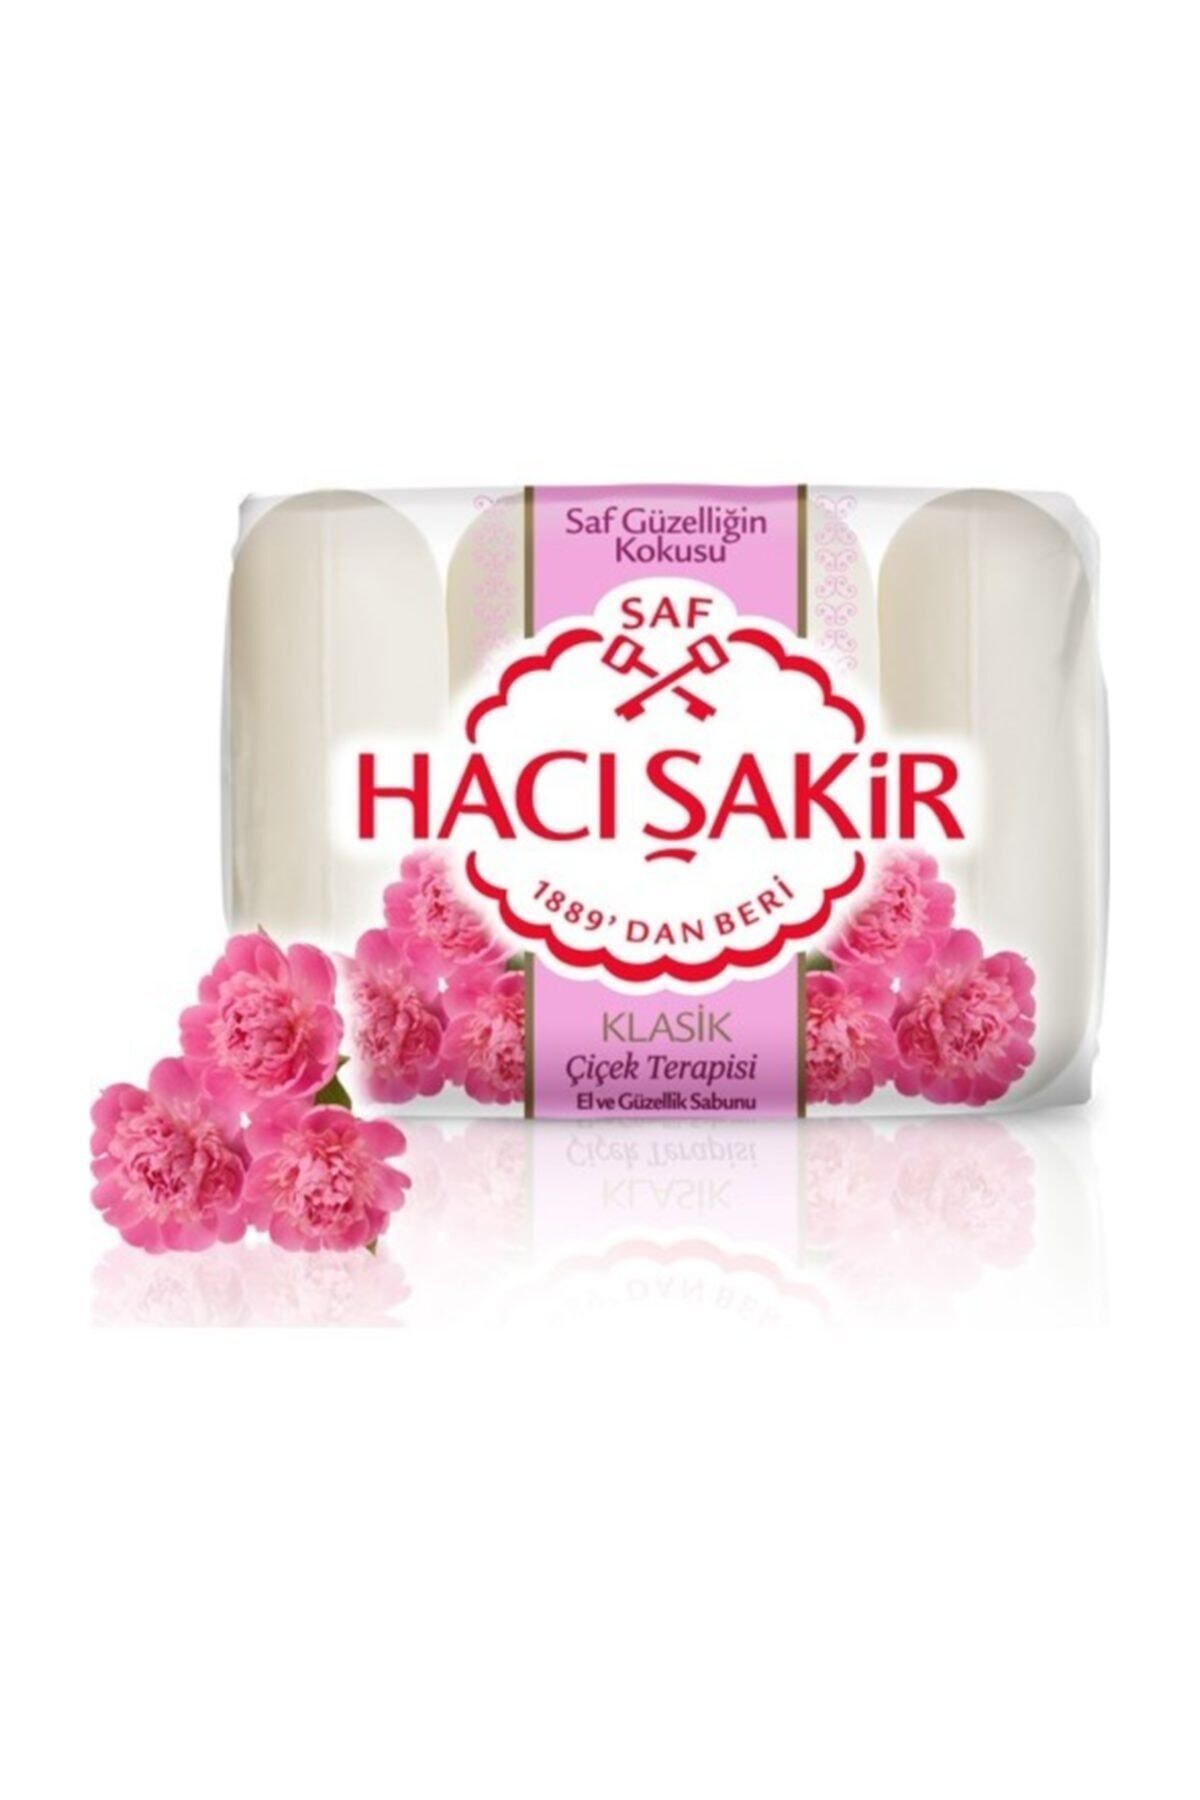 Hacı Şakir Klasik Çiçek Terapisi El ve Güzellik Sabunu 4x70 gr